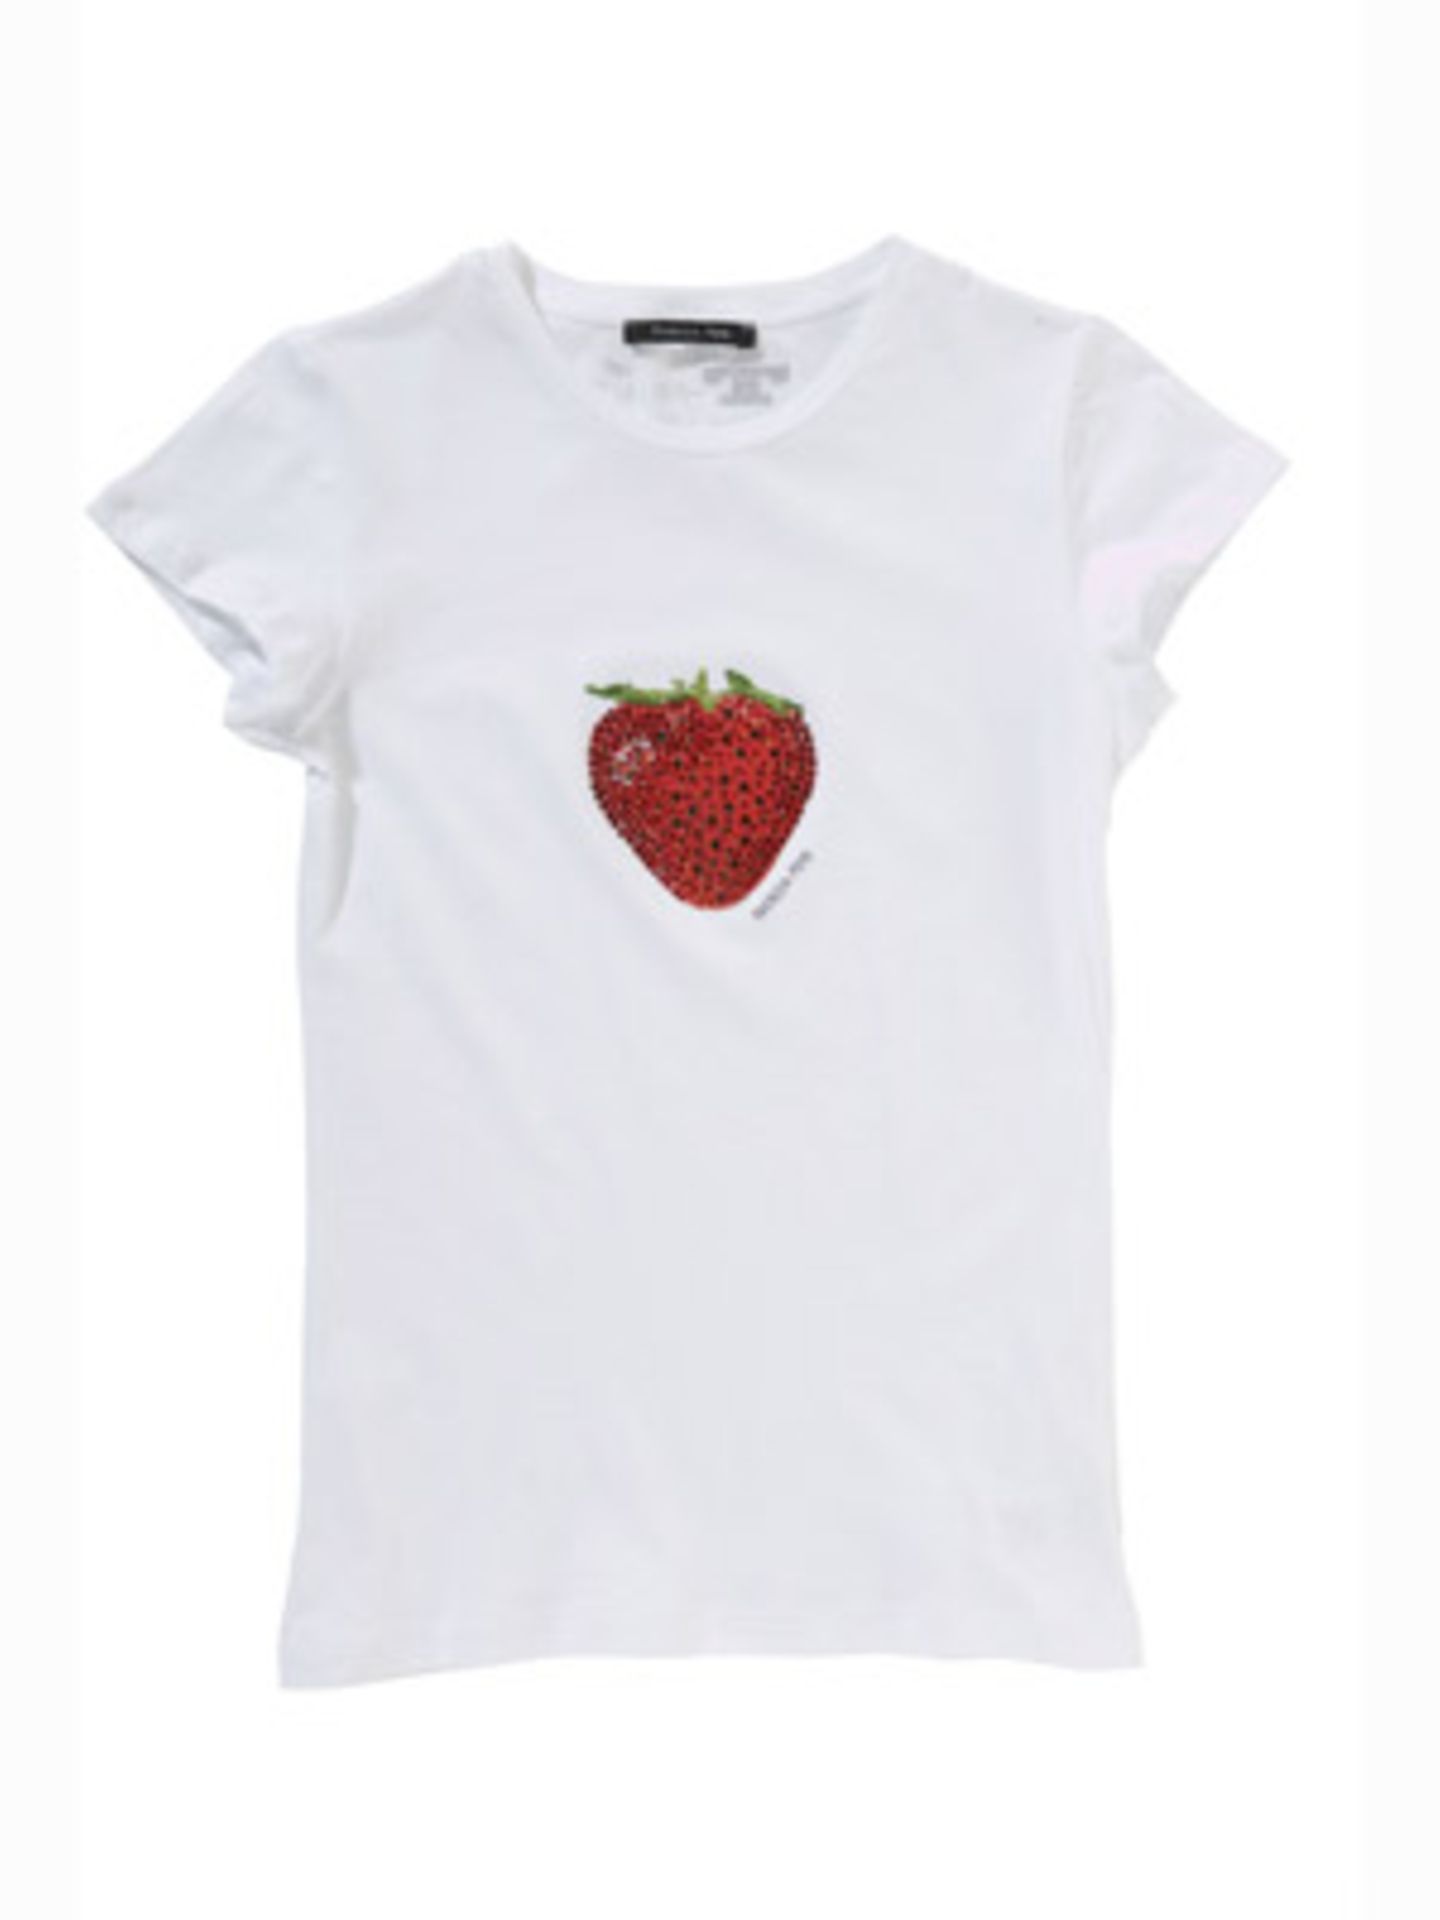 T-Shirt mit Erdbeere in Herzform aus Strasssteinen von Patrizia Pepe, um 80 Euro.